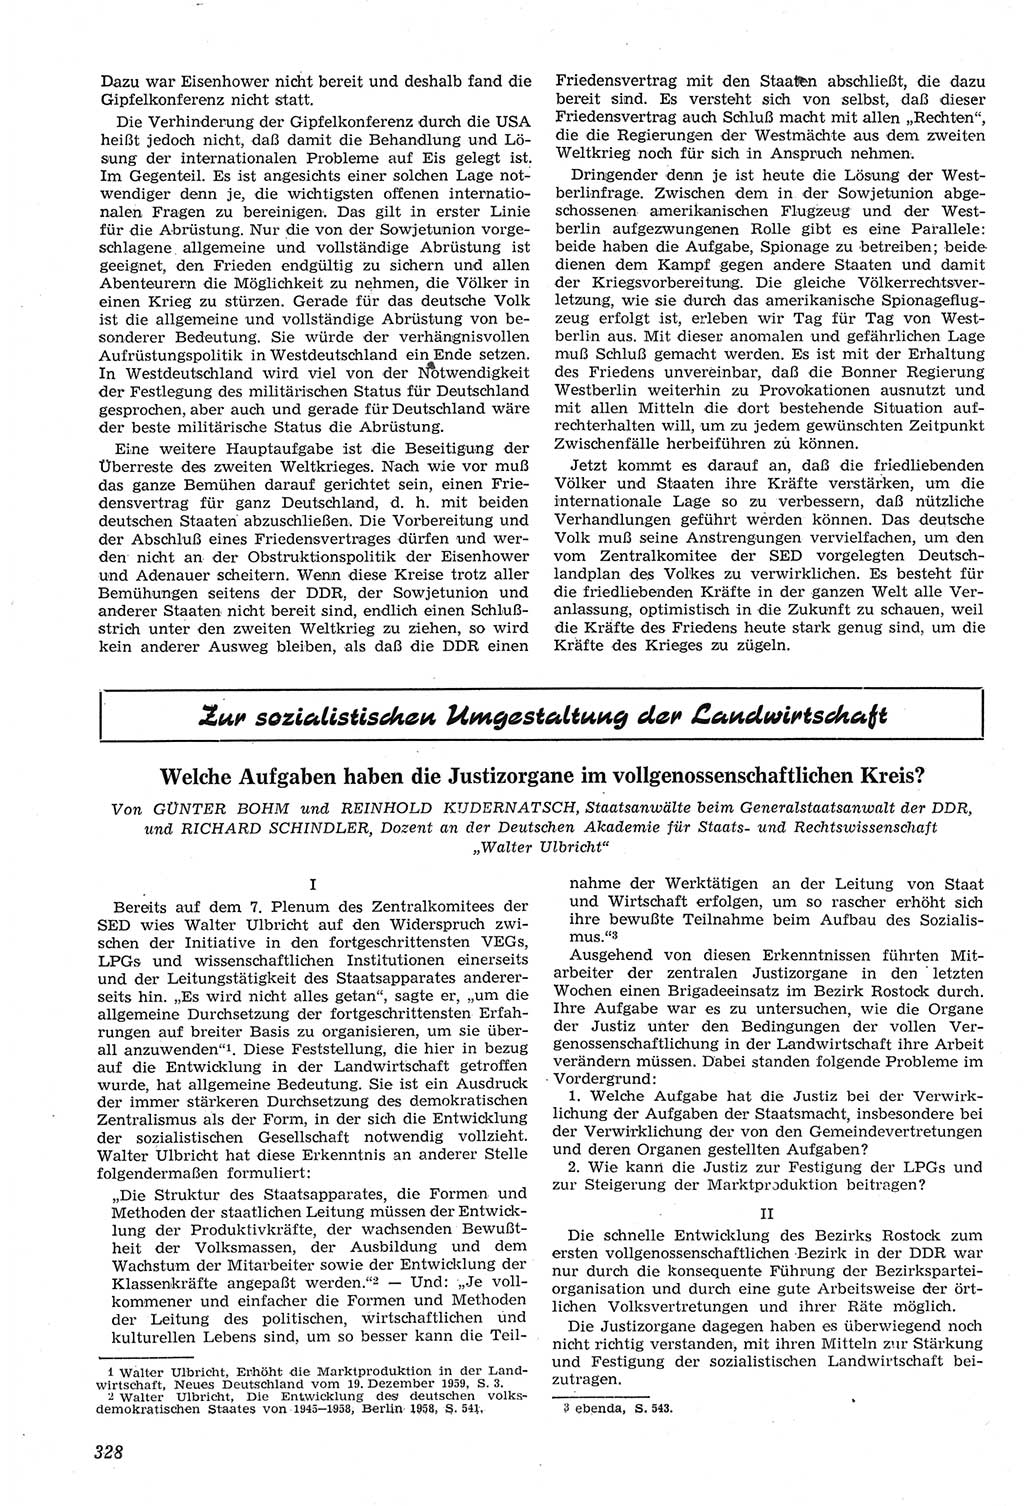 Neue Justiz (NJ), Zeitschrift für Recht und Rechtswissenschaft [Deutsche Demokratische Republik (DDR)], 14. Jahrgang 1960, Seite 328 (NJ DDR 1960, S. 328)